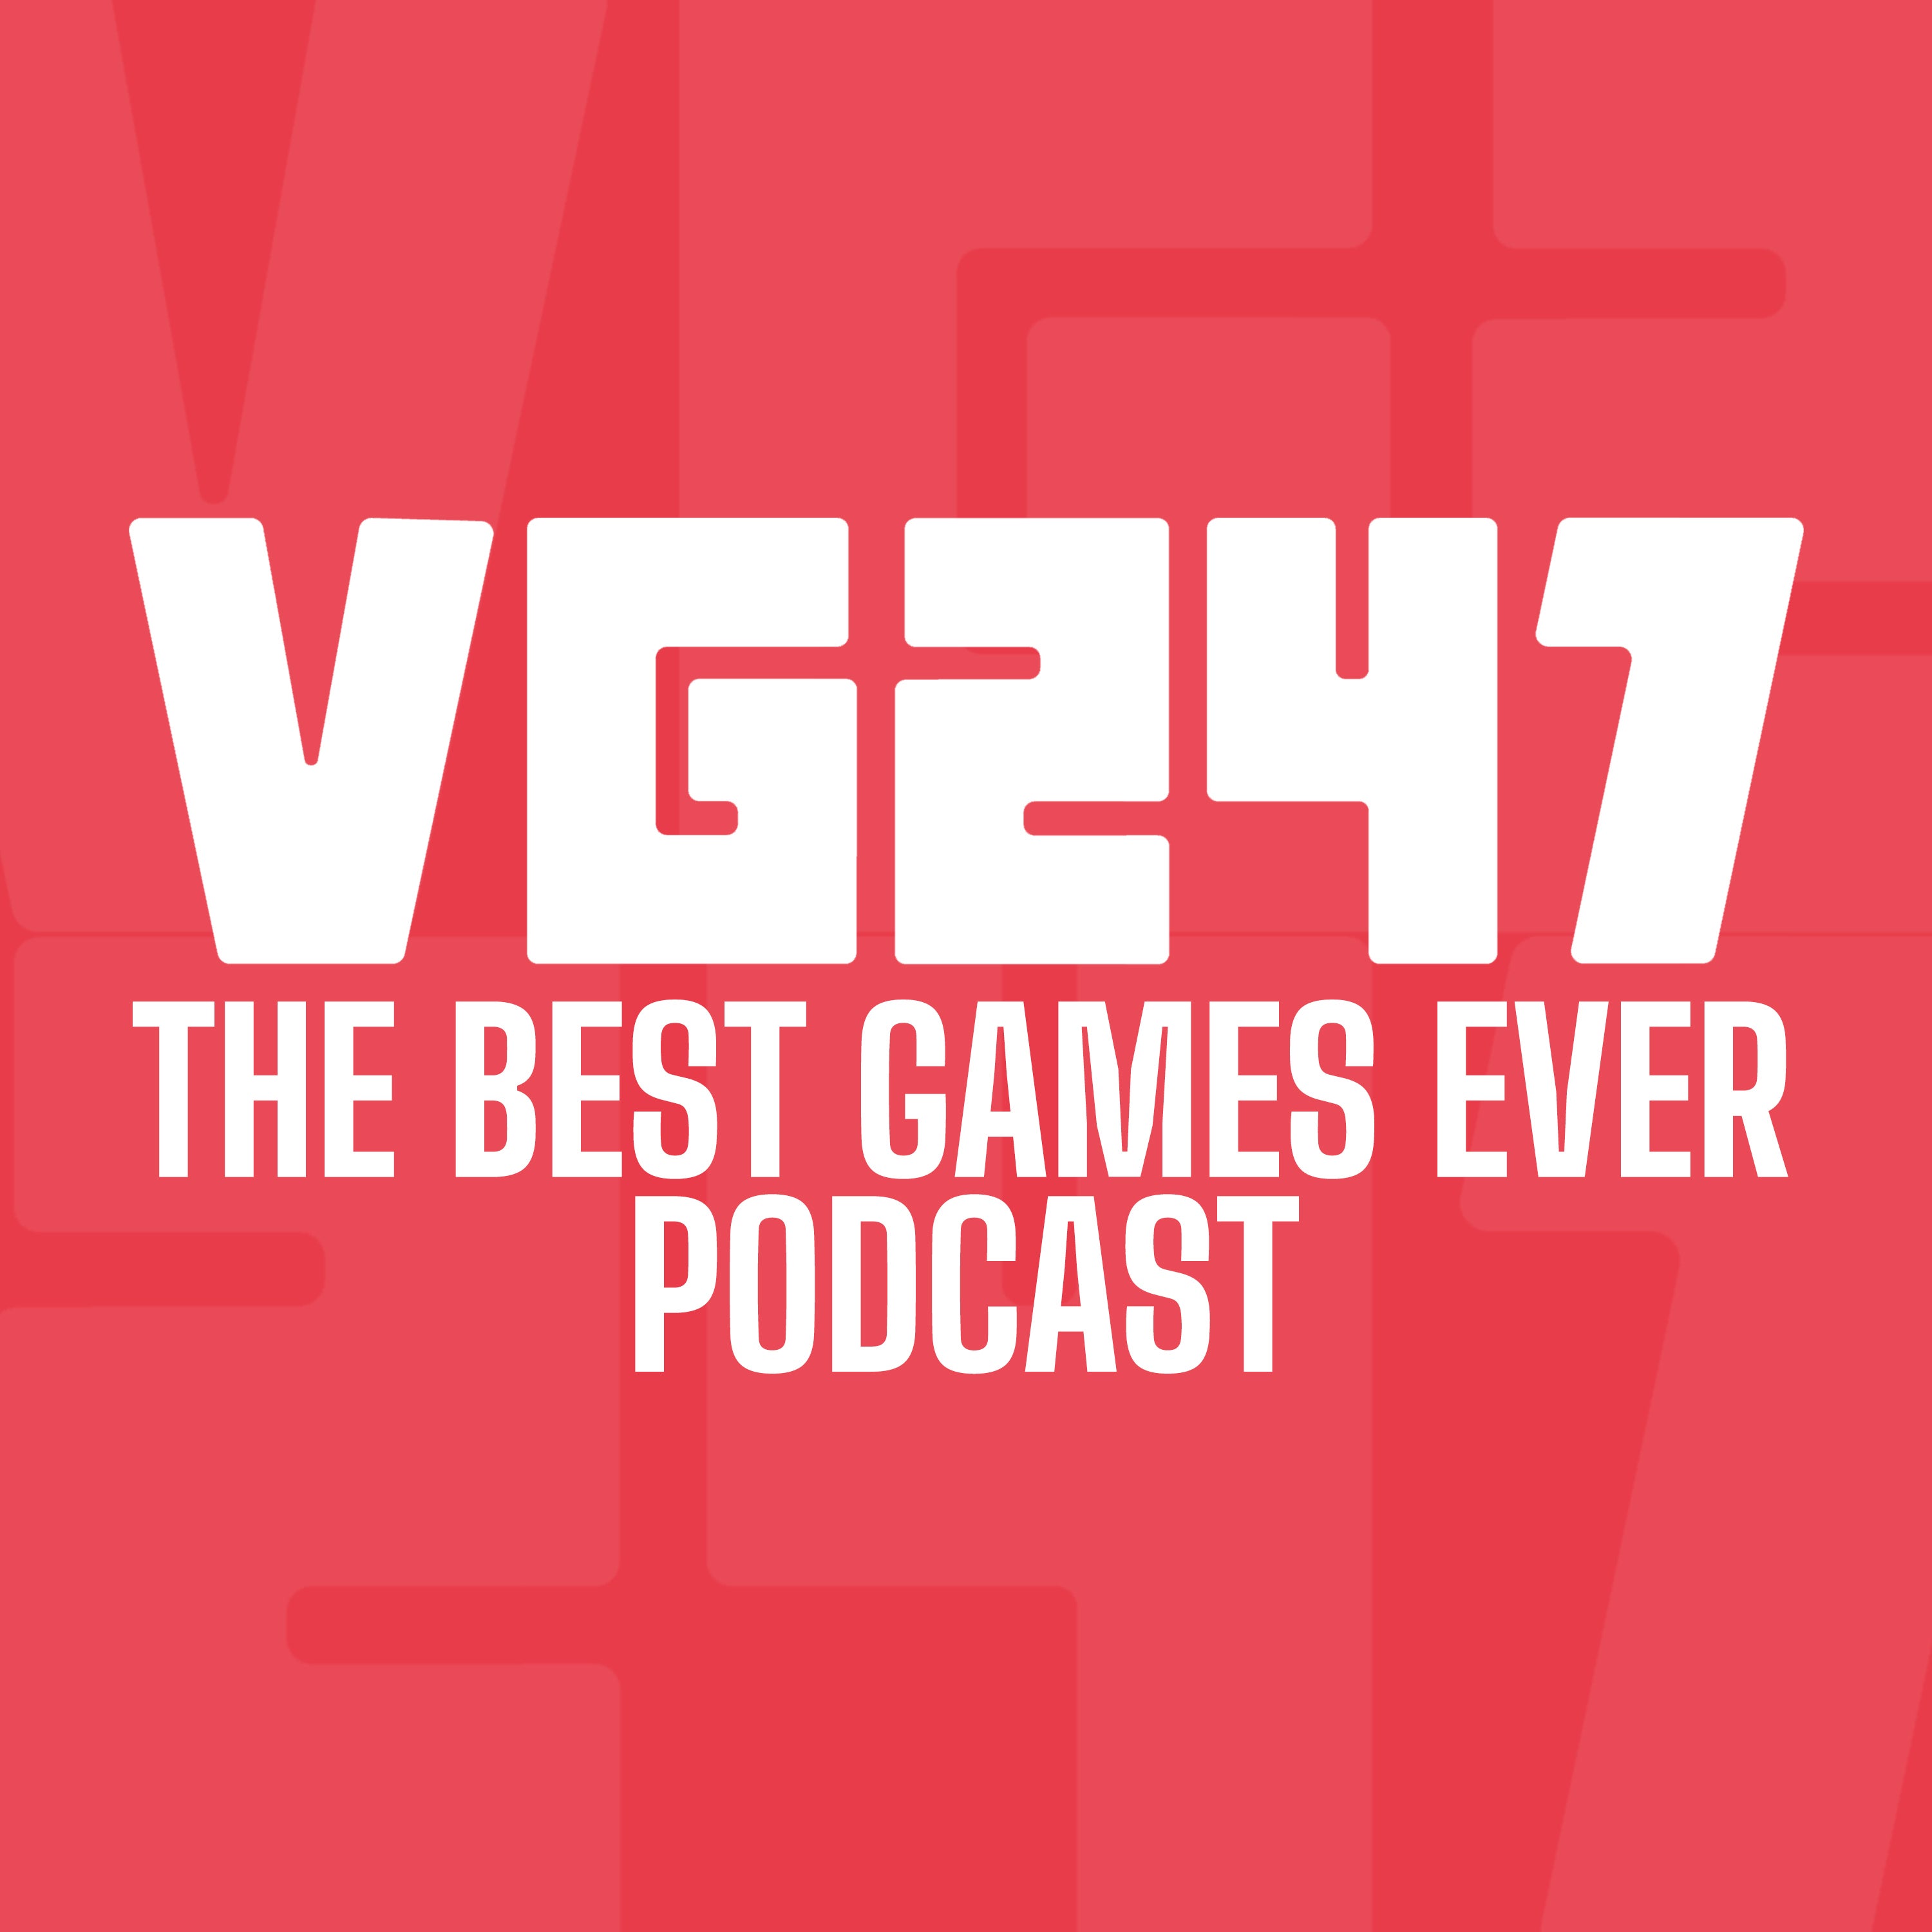 Logo untuk Podcast Game Terbaik VG247.  Teks putih dengan latar belakang merah.